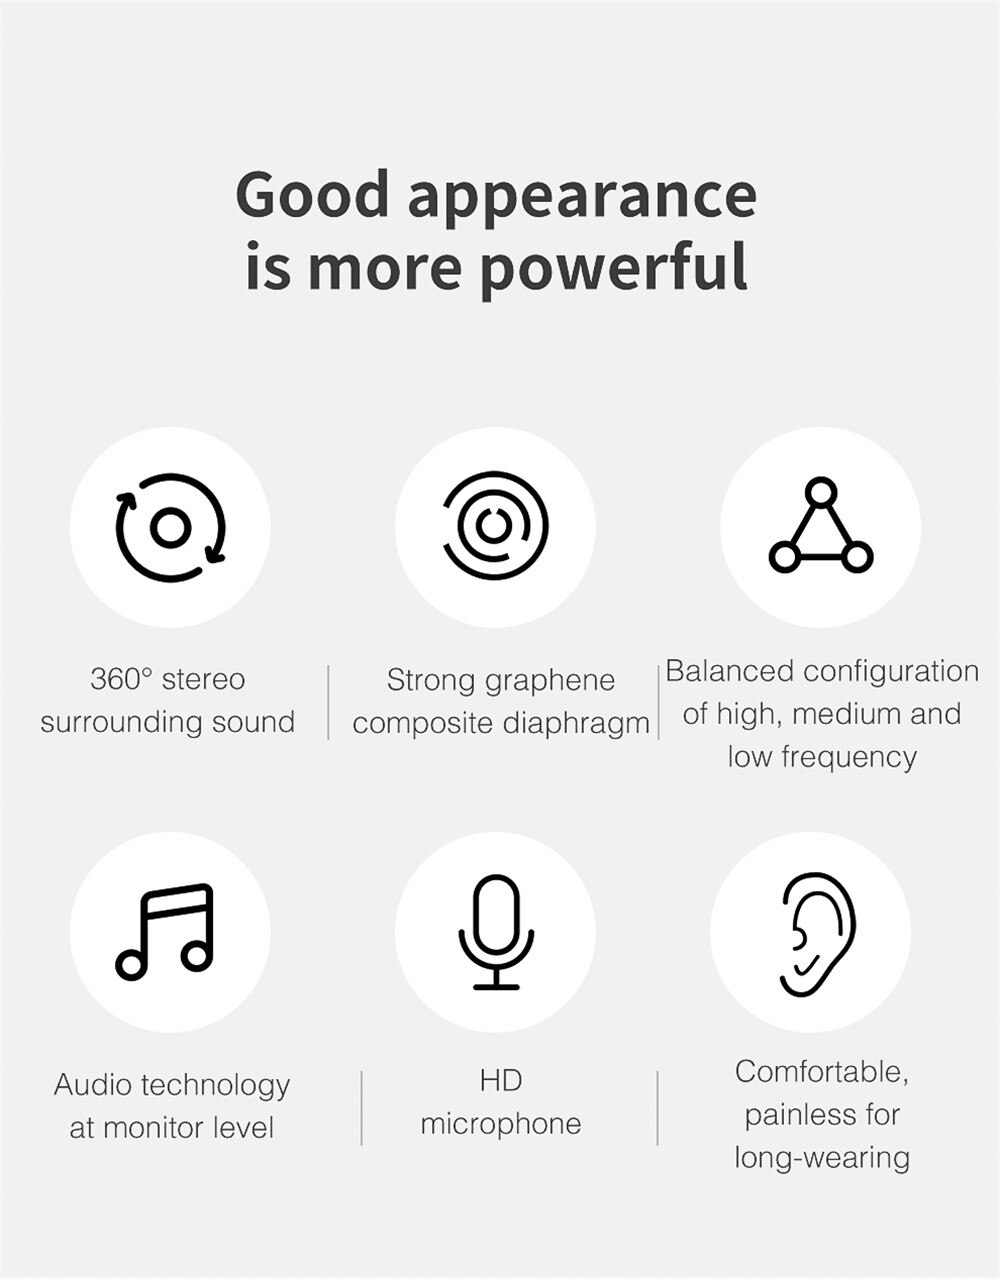 Qkz  ak5 tung bas øretelefon headset hifi øretelefon jern kontrol musik bevægelse udveksling bluetooth kabel støjreducerende ørepropper